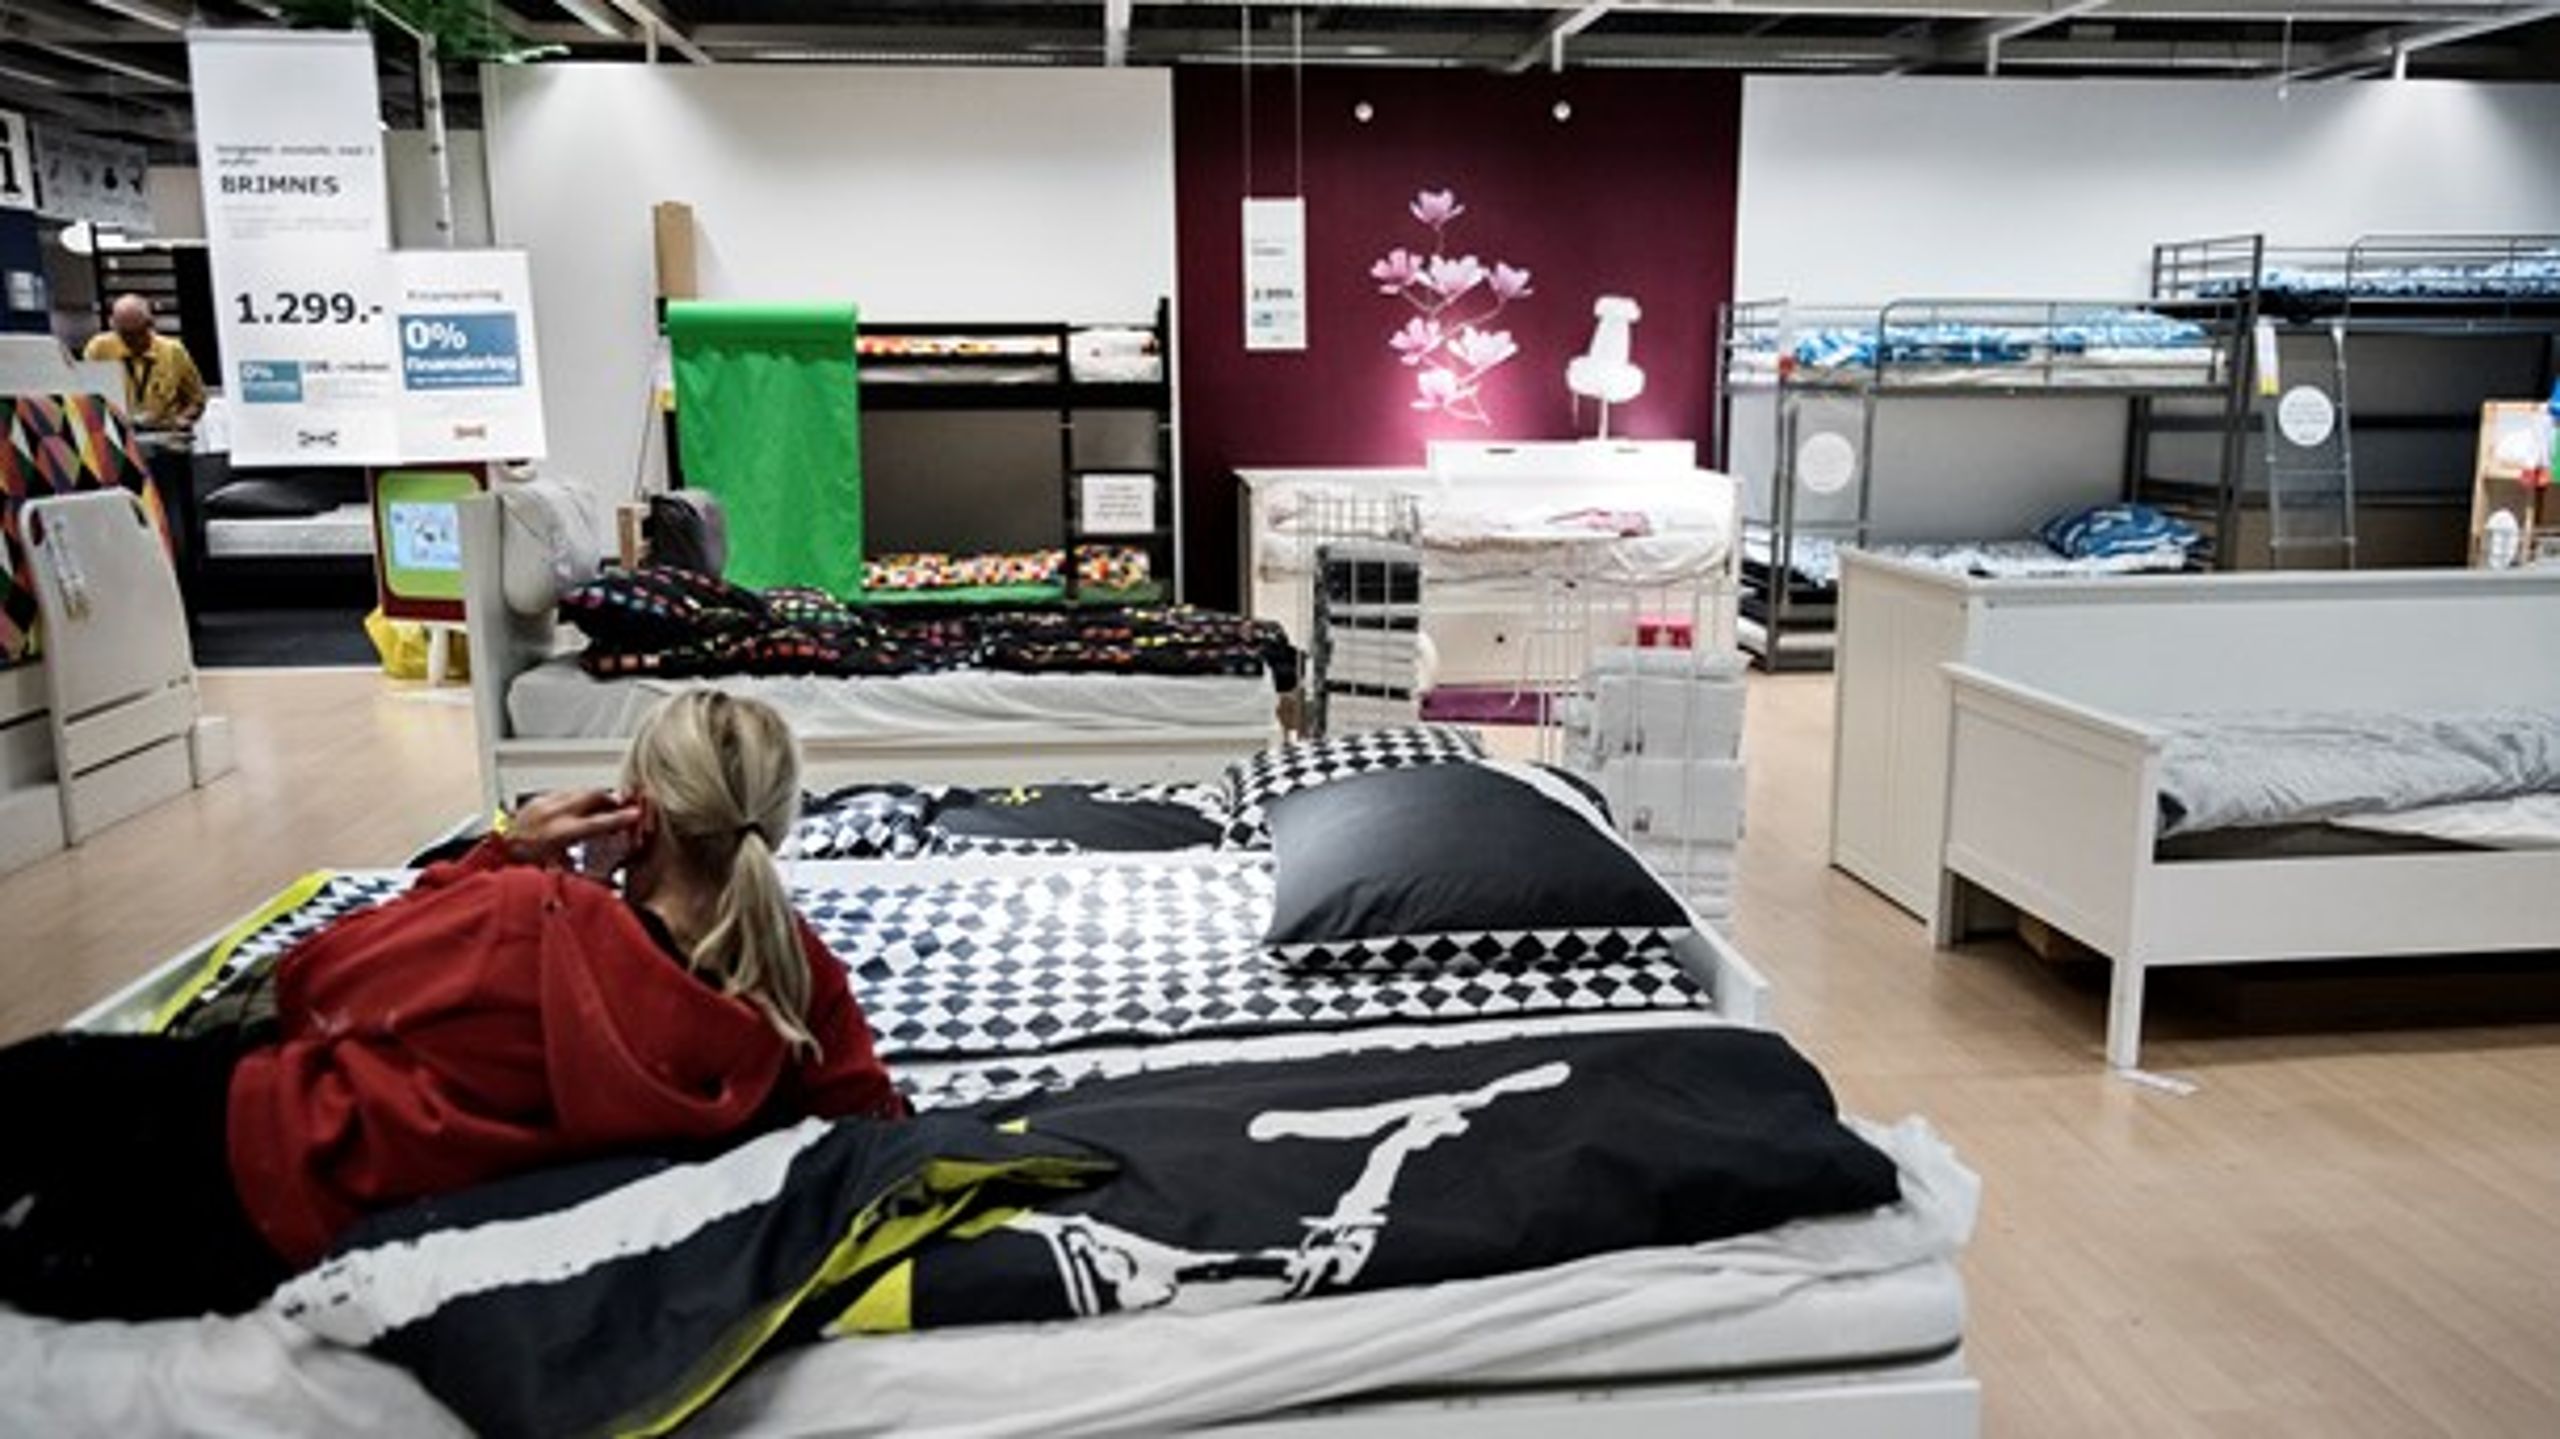 En teenager var frustreret over, at hun ikke havde lært at samle et skab fra Ikea i folkeskolen, skriver Anders Thorsen, som har lavet en liste over "sæt det på skoleskemaet"-forslag.